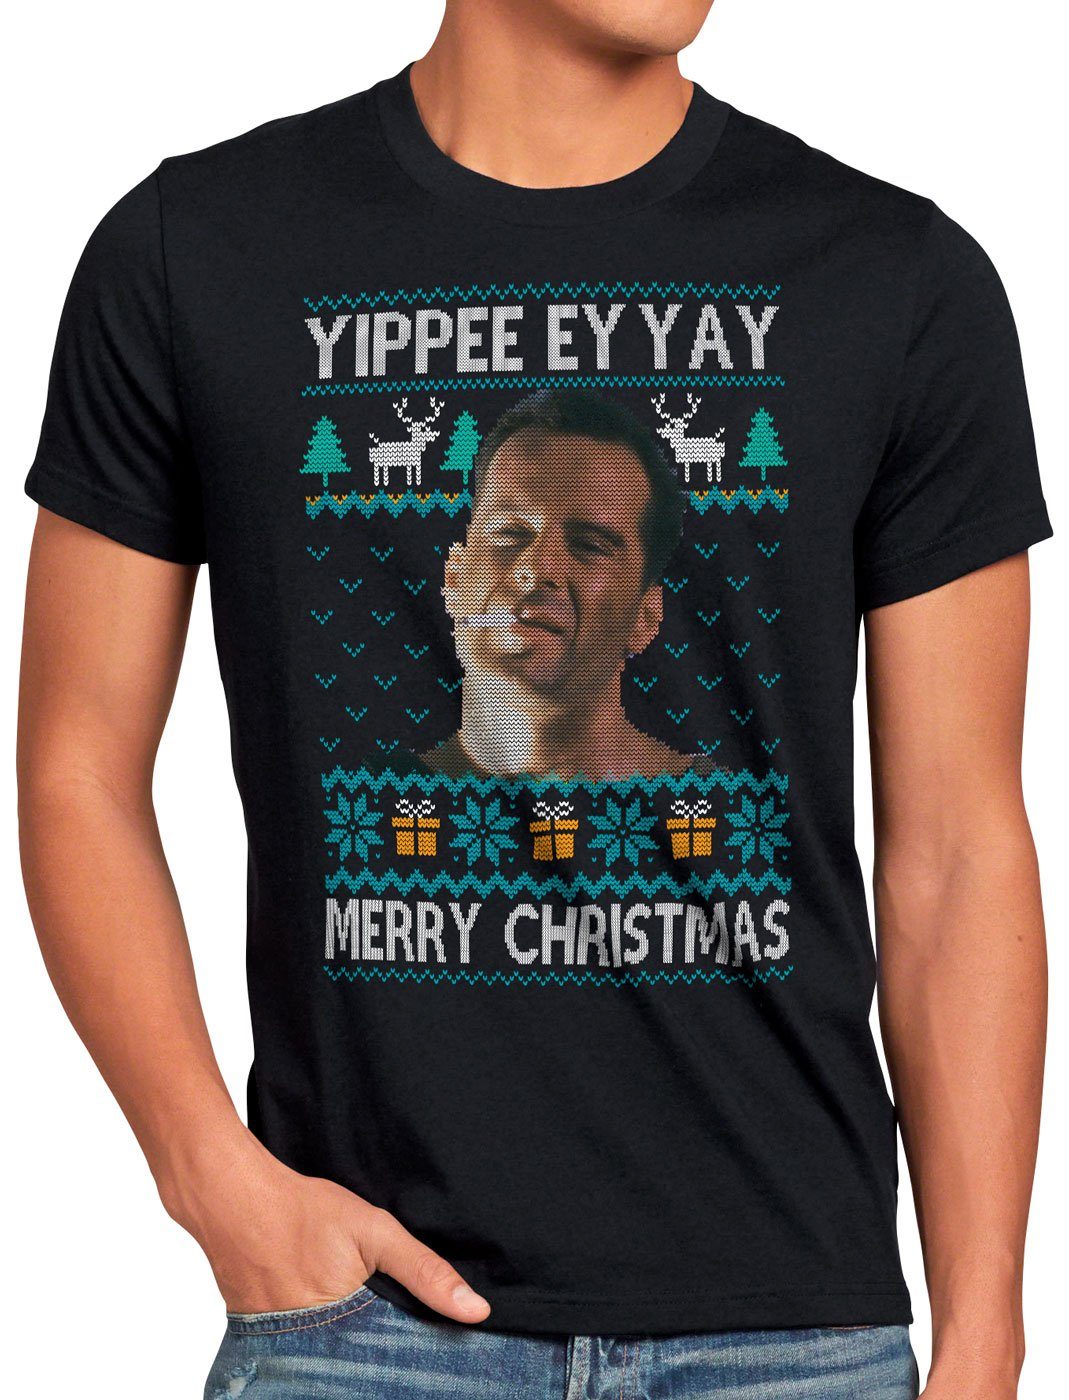 Print-Shirt sweater Weihnachten Allein Kevin style3 ugly zu Weihnachts Pullover Haus